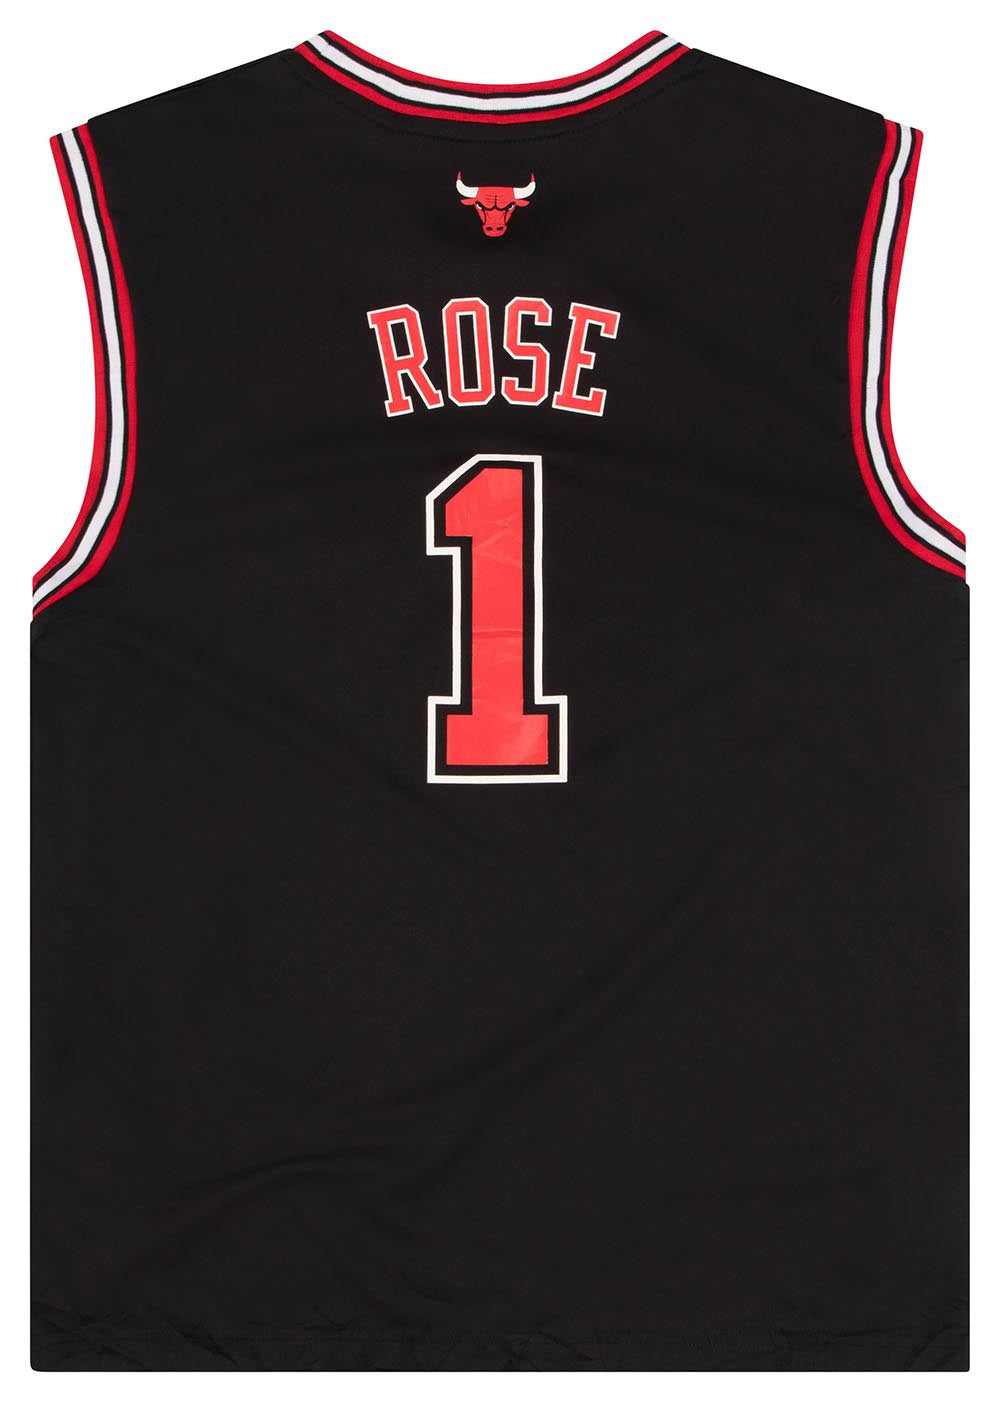 Derrick Rose Chicago Bulls Basketball Jersey – Best Sports Jerseys